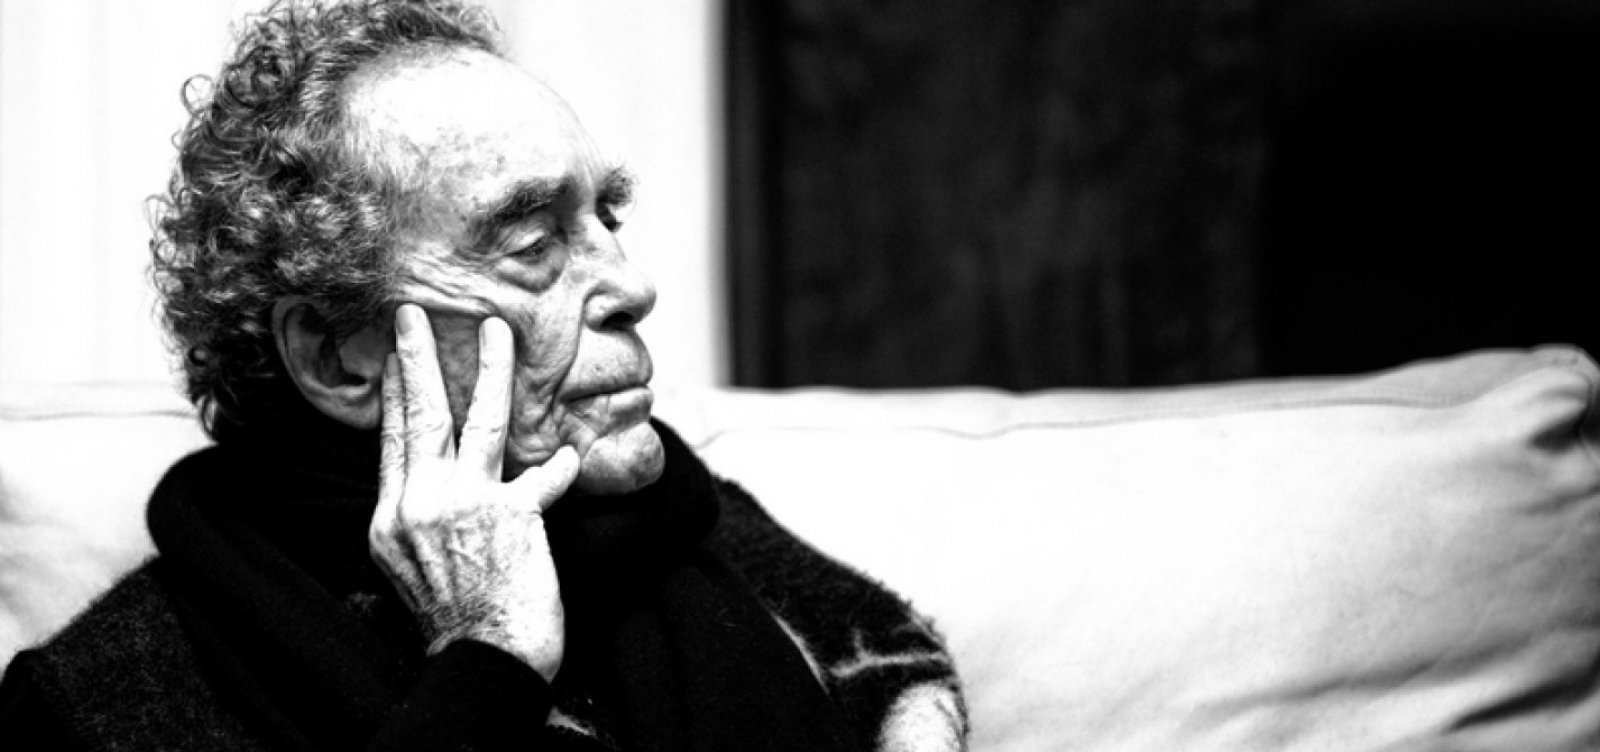 Morre André Midani, um dos homens mais importantes para a música no Brasil